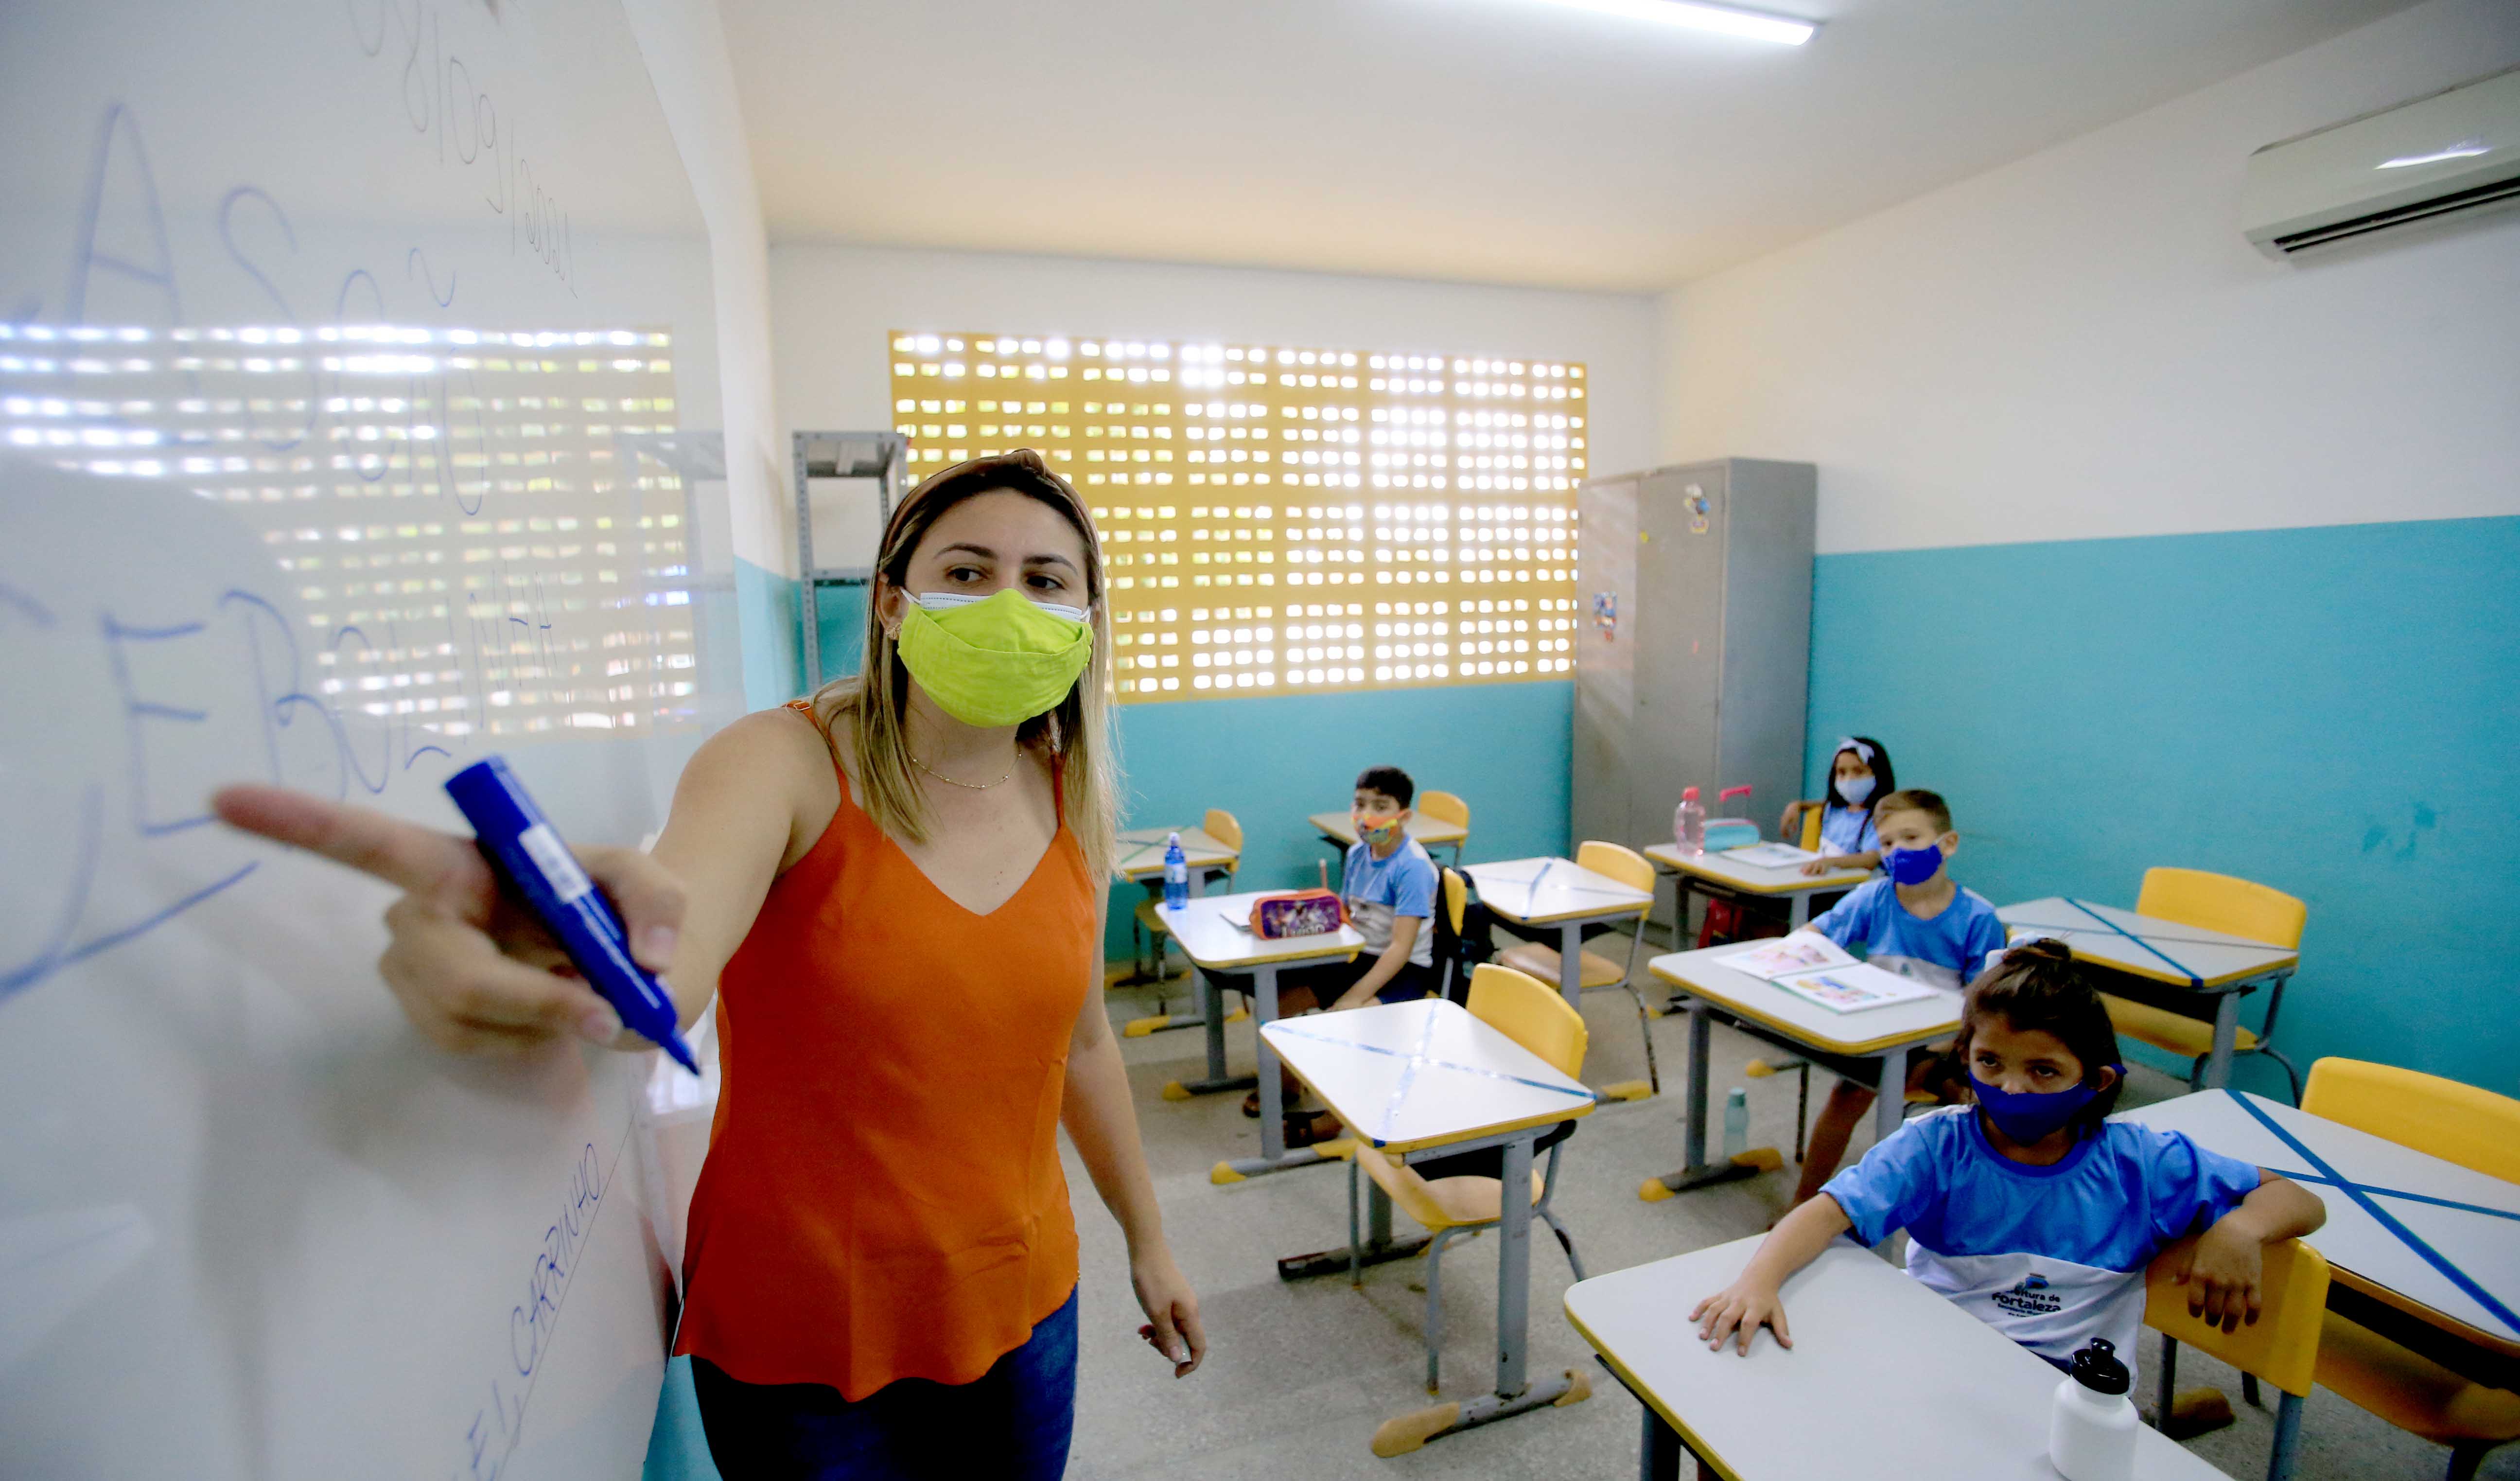 professora e alunos em sala de aula, todos usam máscara